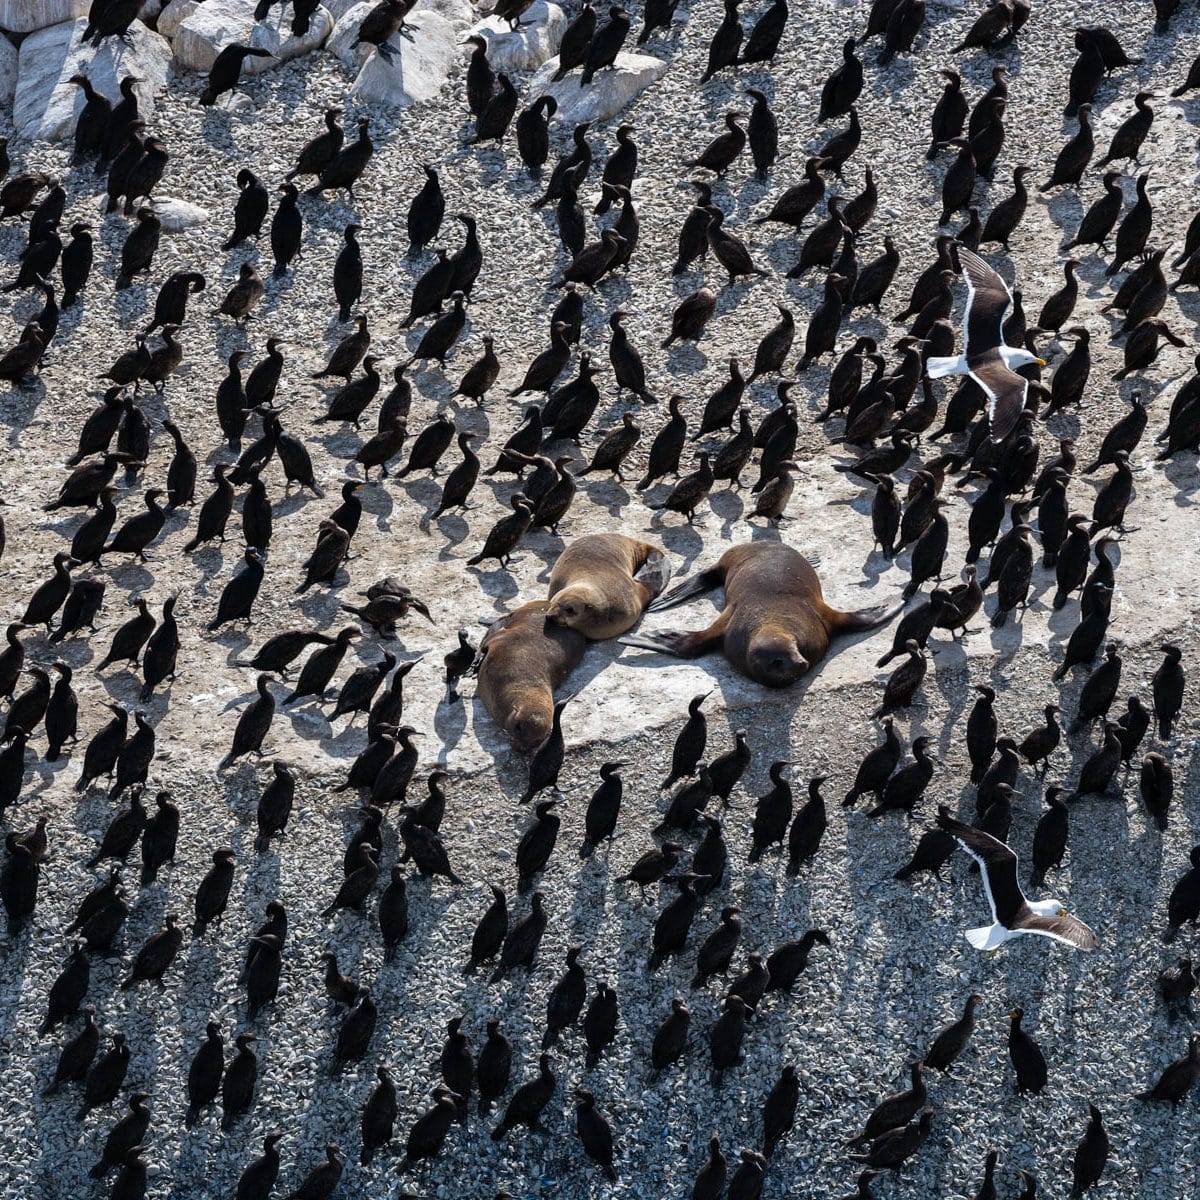 Cormorans et otaries à fourrures du Cap à Seal Island, False Bay, Province du Cap, République d’Afrique du Sud (34°08’ S- 18°35’ E) © Yann Arthus Bertrand